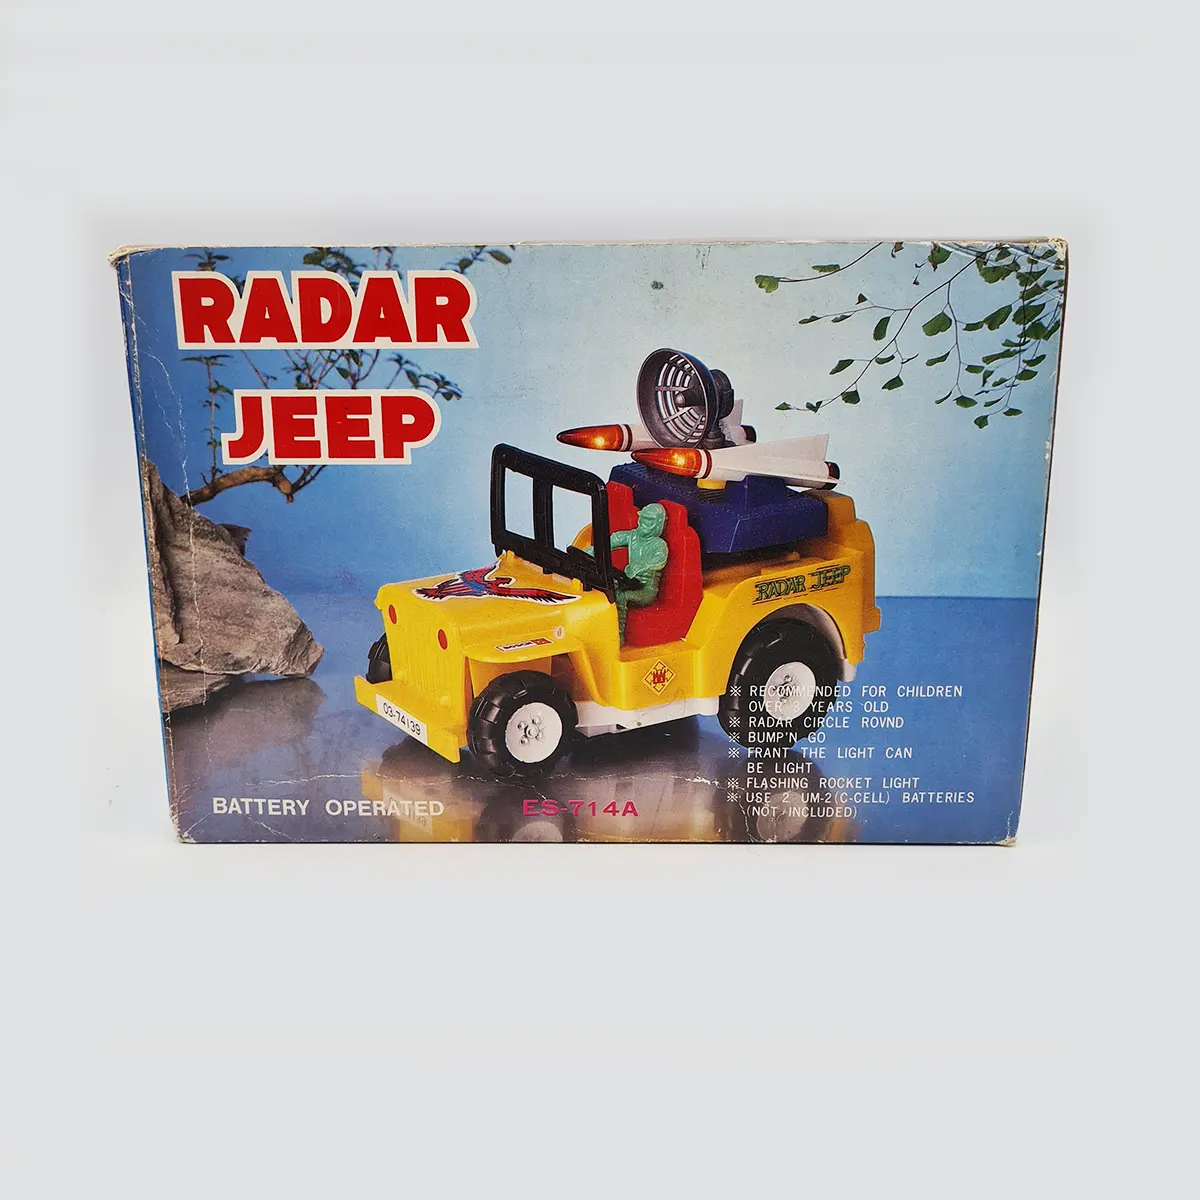 Radar Jeep